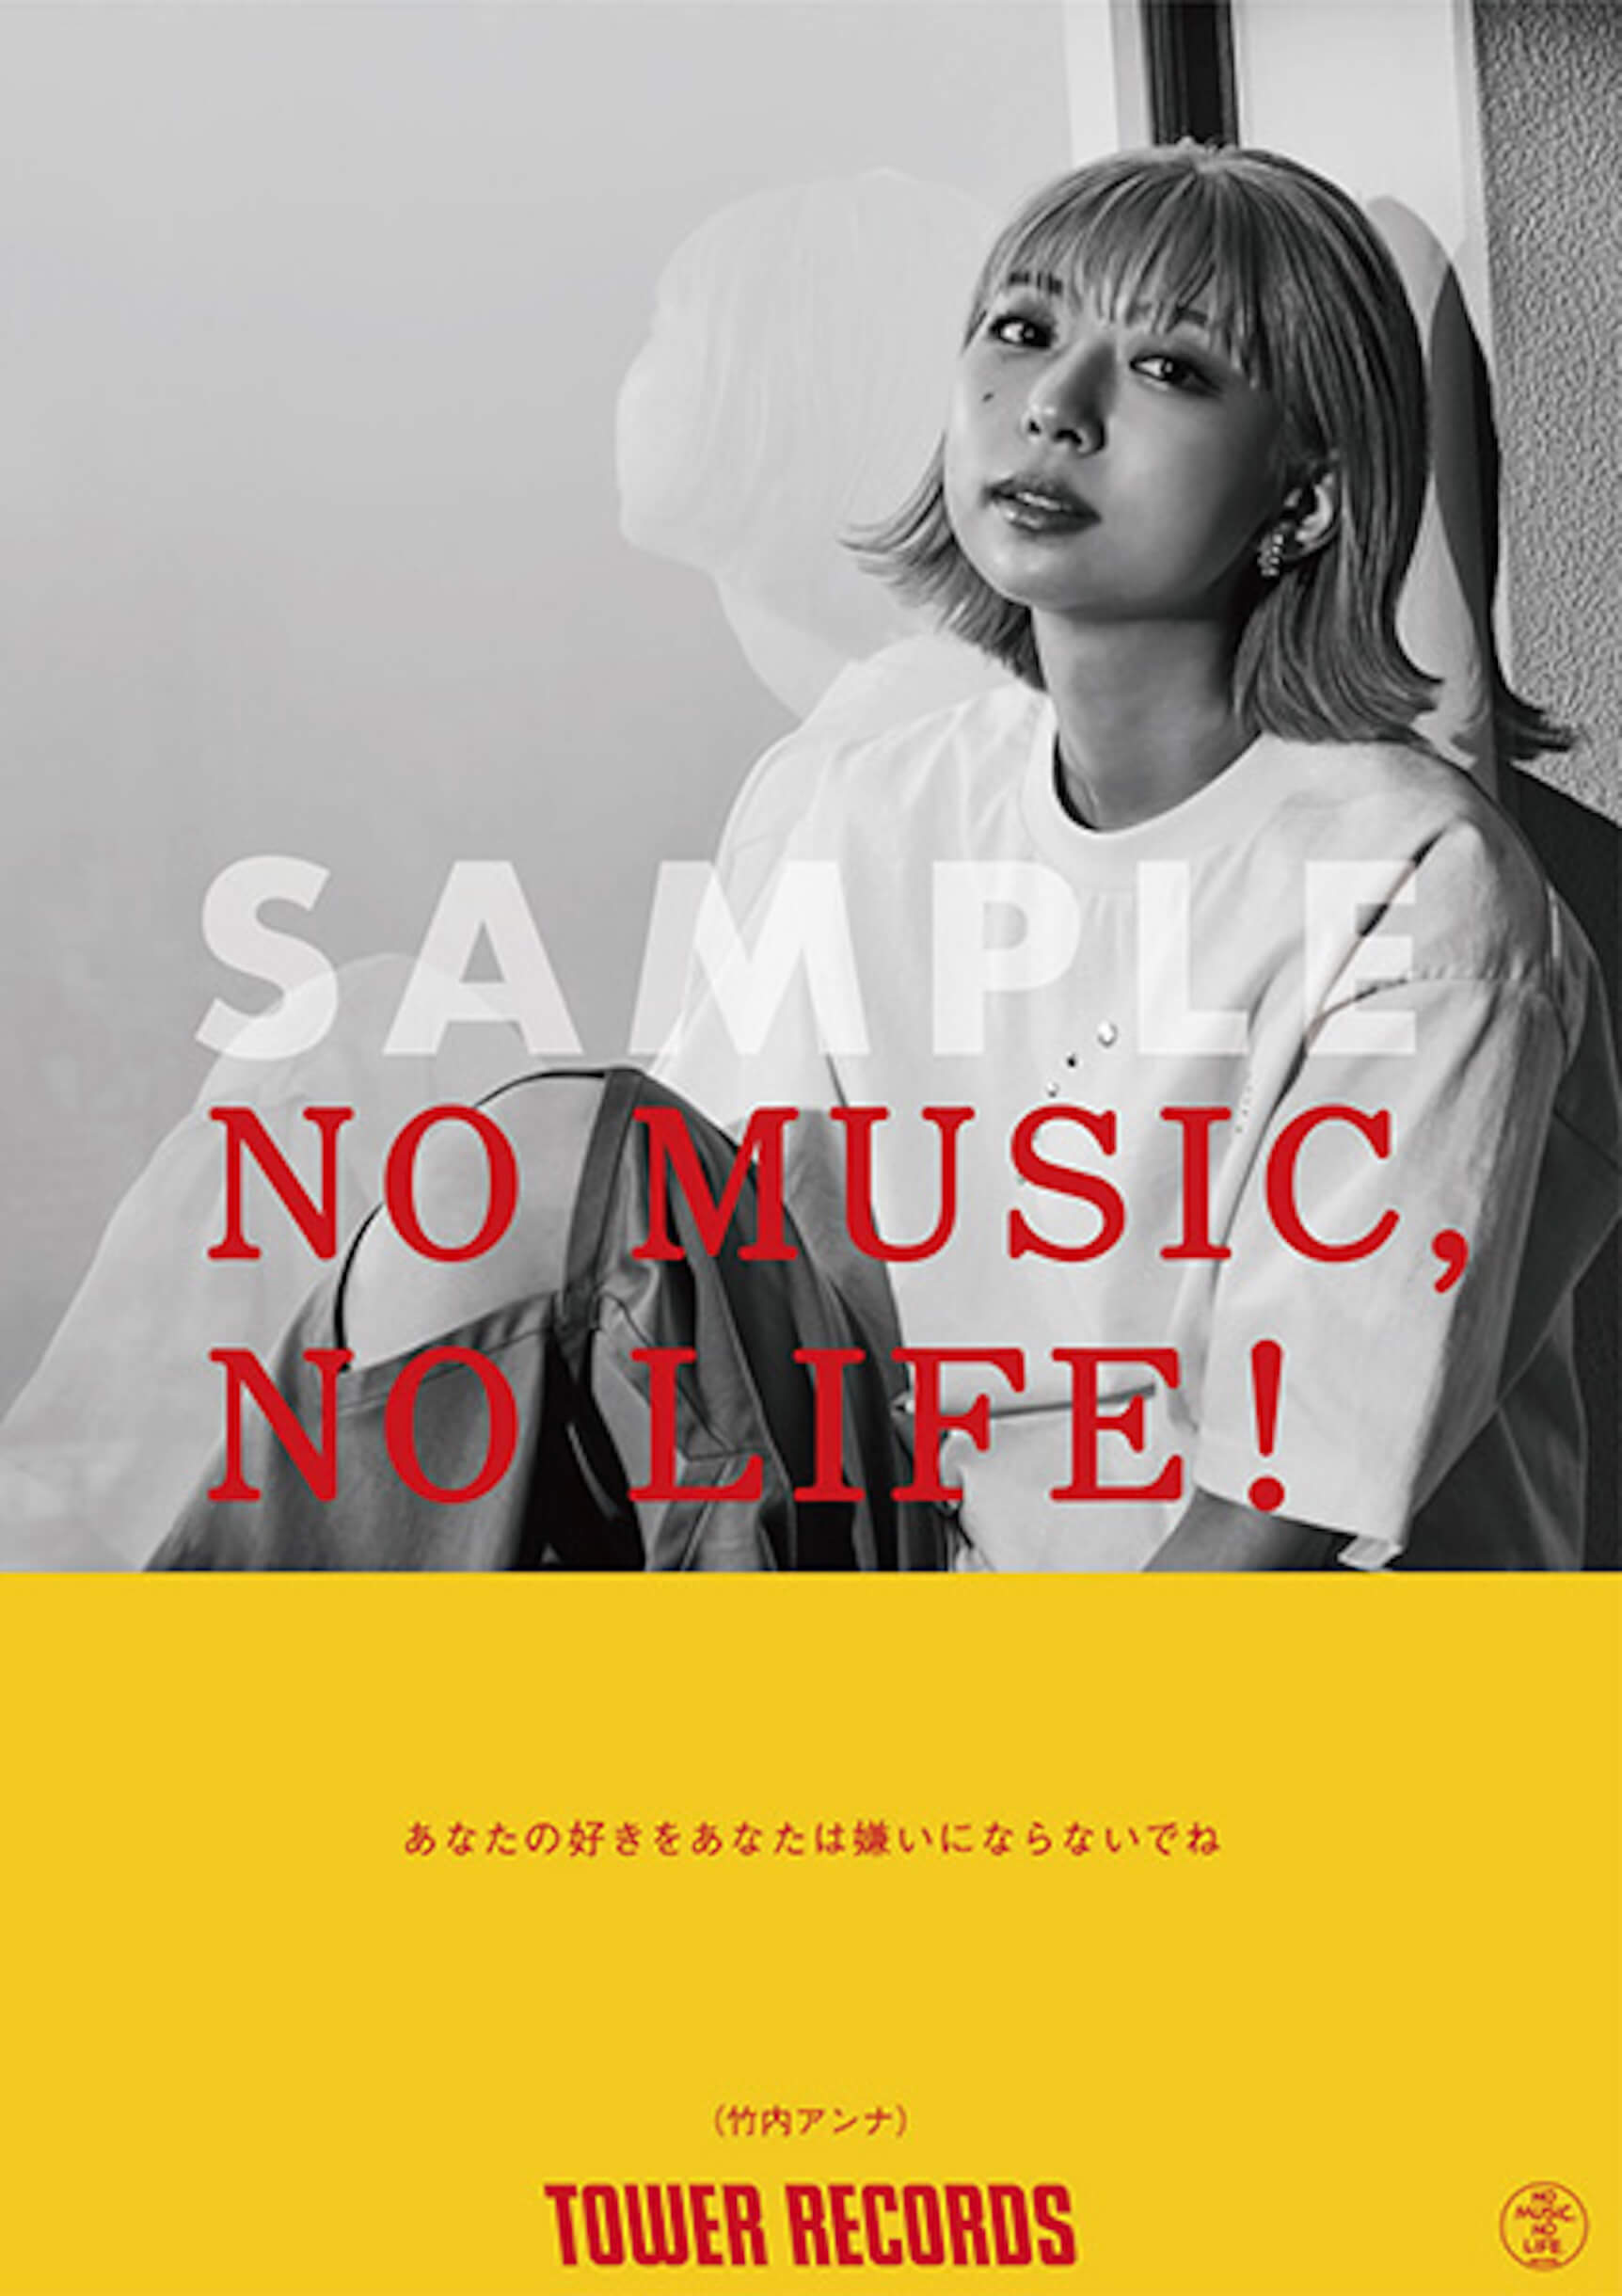 iriと竹内アンナが「NO MUSIC, NO LIFE.」に初登場！タワレコ限定アルバム購入特典も music220216_towerrecords-06